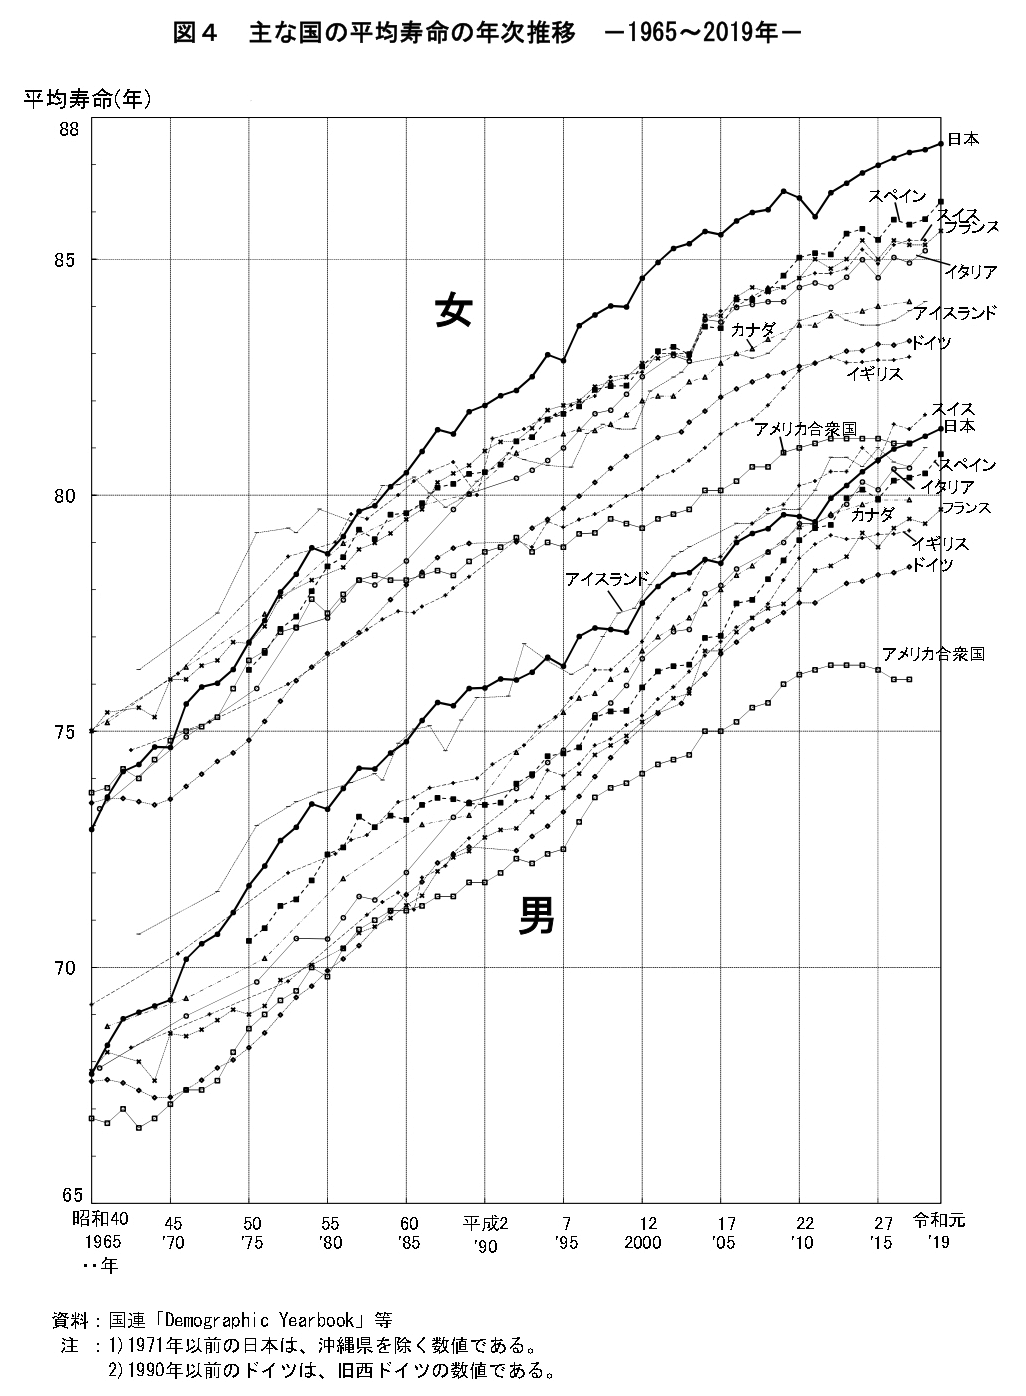 図4 主な国の平均寿命の年次推移 -1965~2019年-